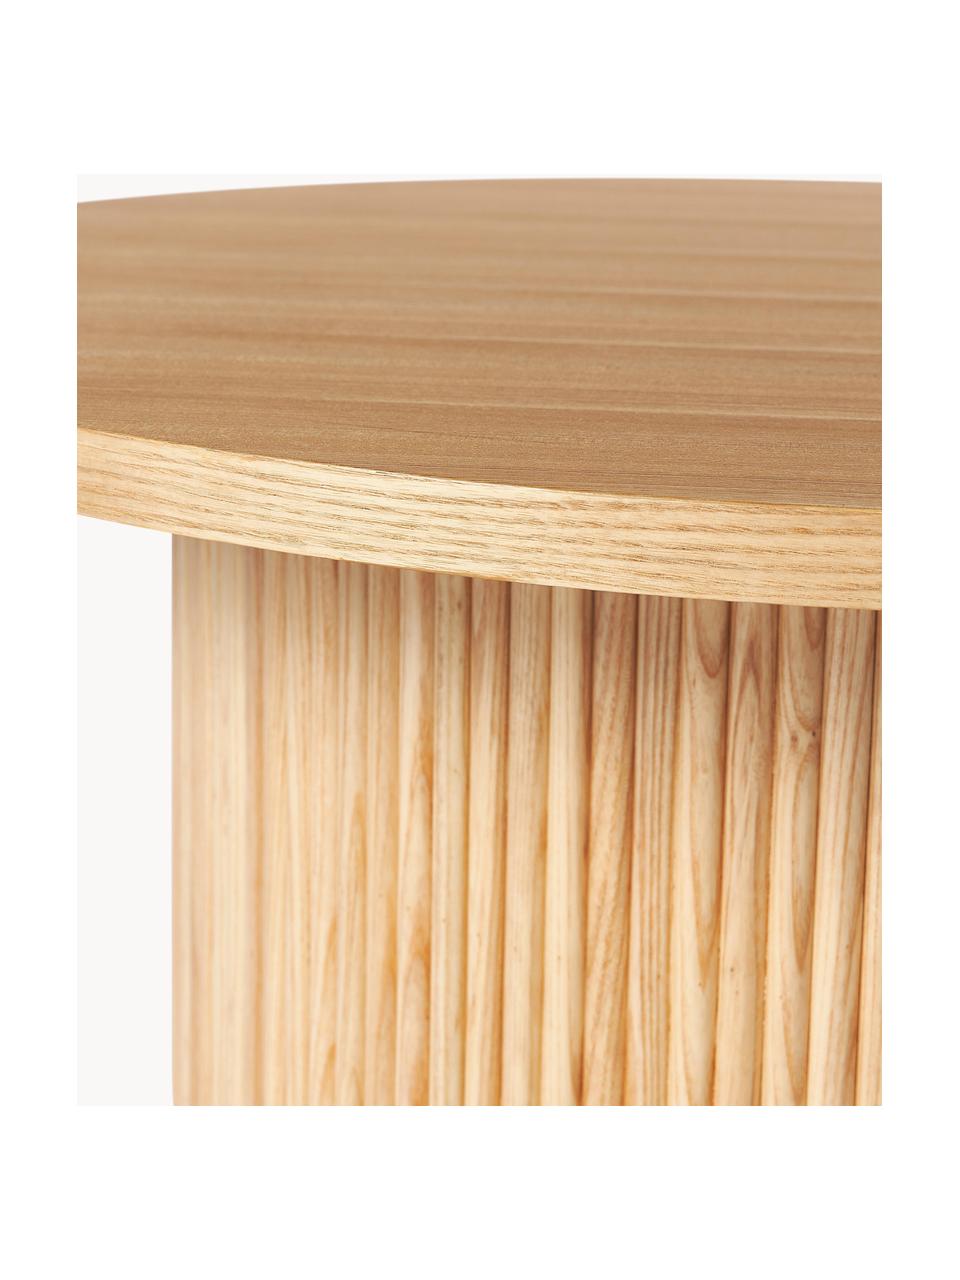 Ronde houten salontafel Nele, Tafelblad: MDF met essenhoutfineer, Voet: massief essenhout, FSC-ge, Hout, ∅ 85 x H 33 cm